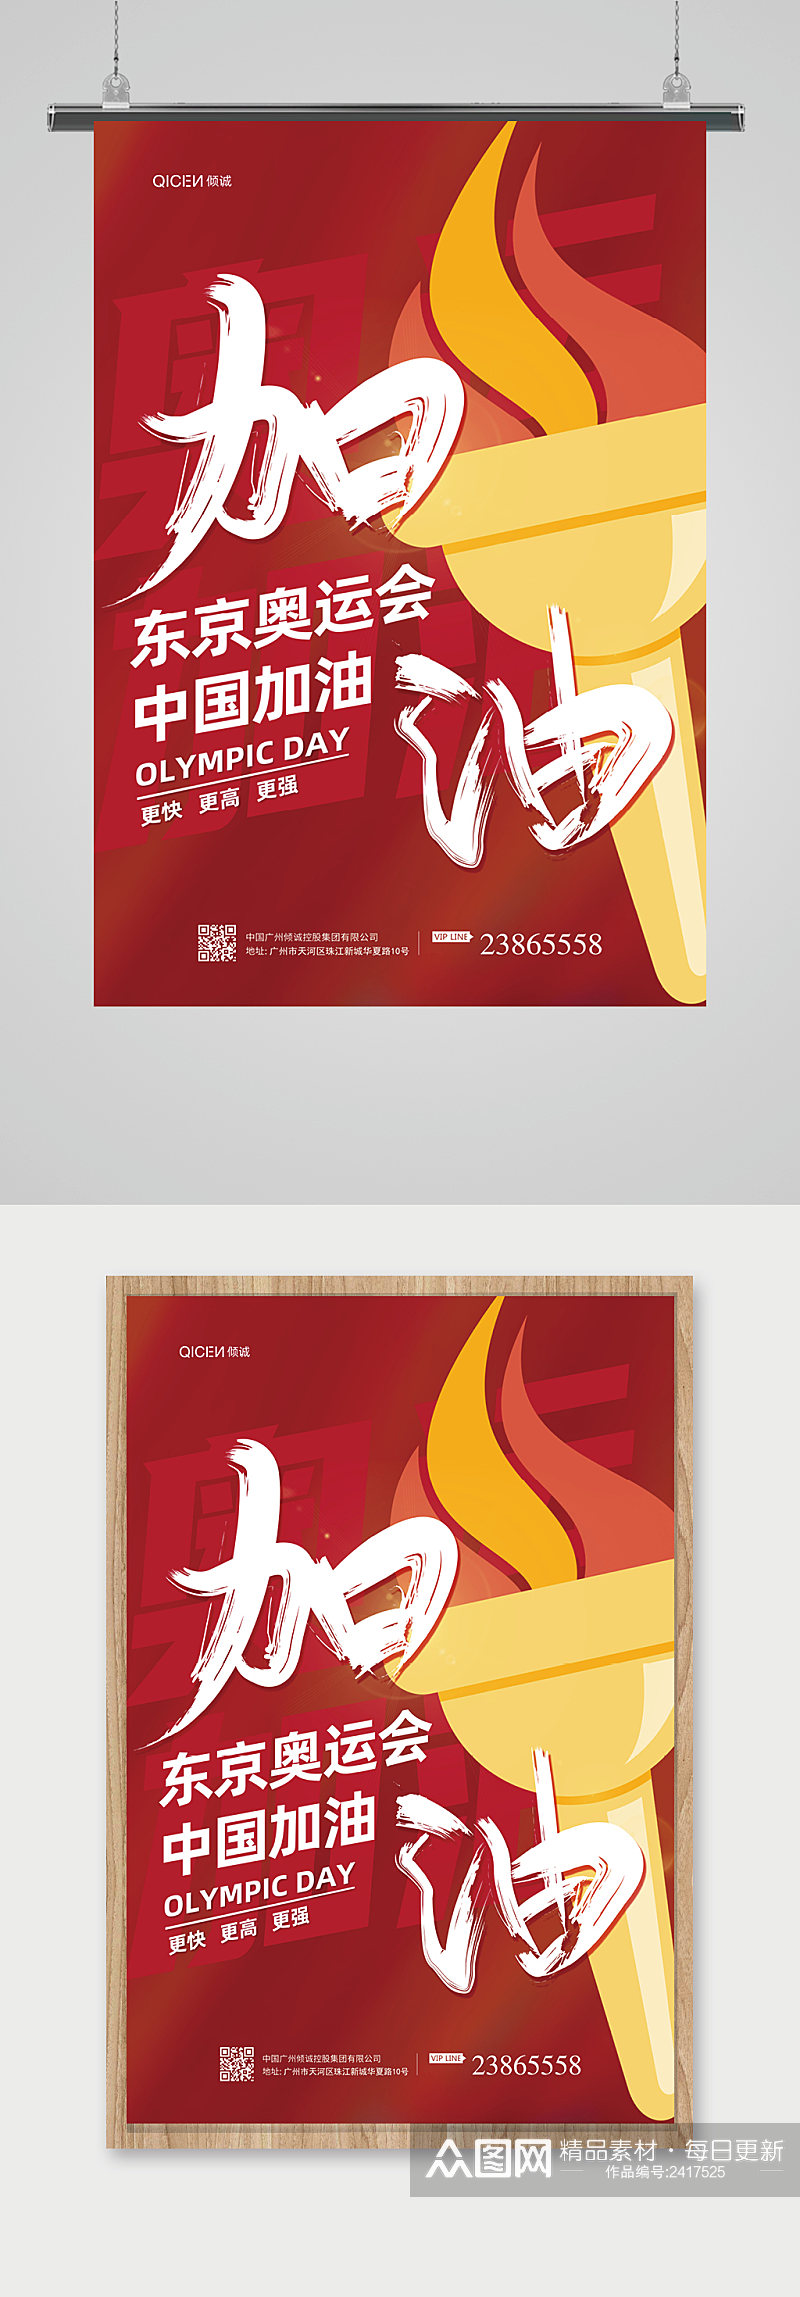 东京奥运会中国加油海报设计素材